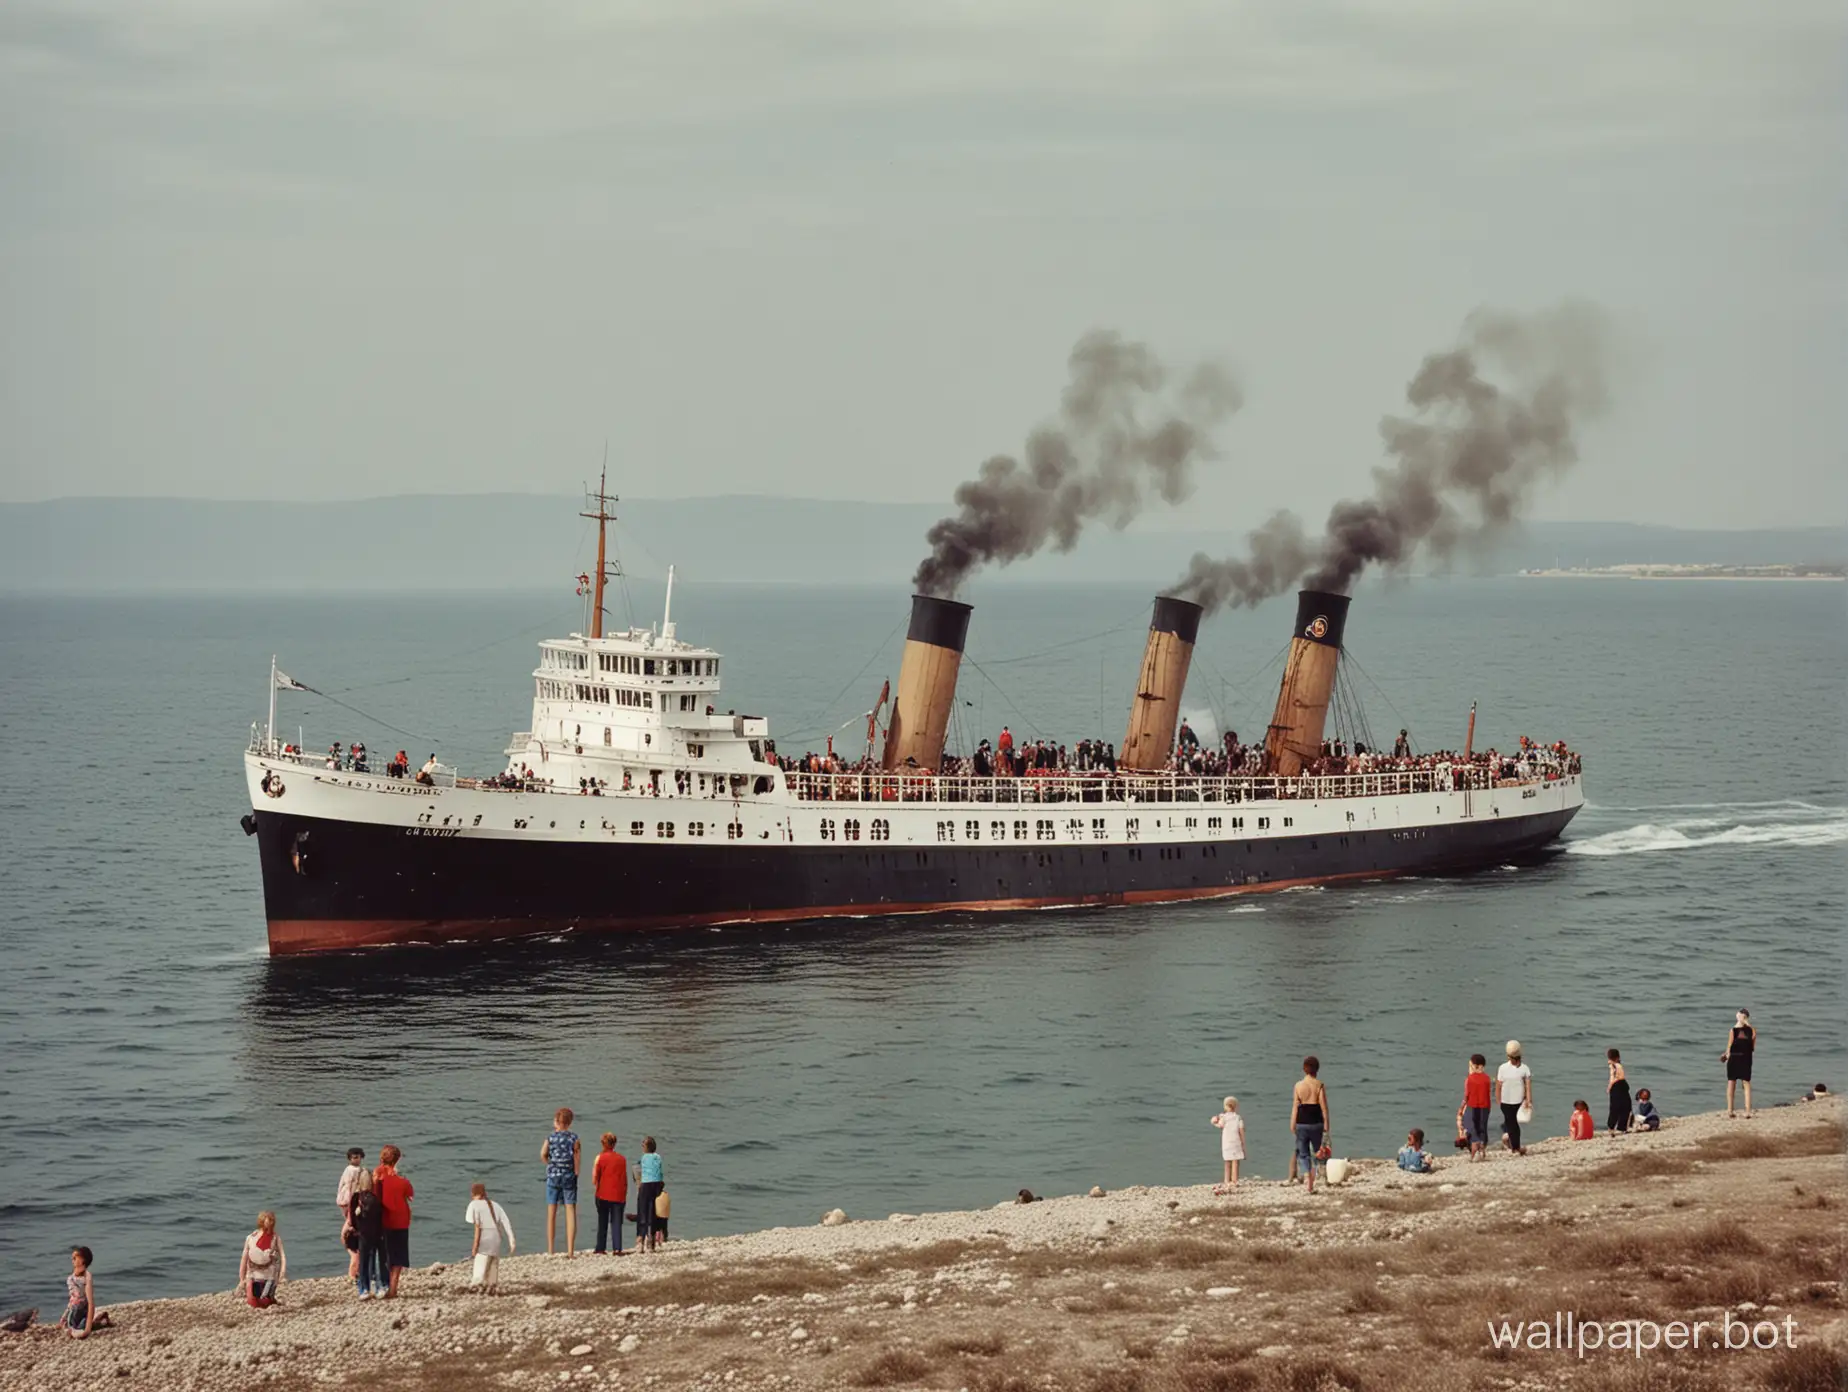 Crimea, sea, steamship, children